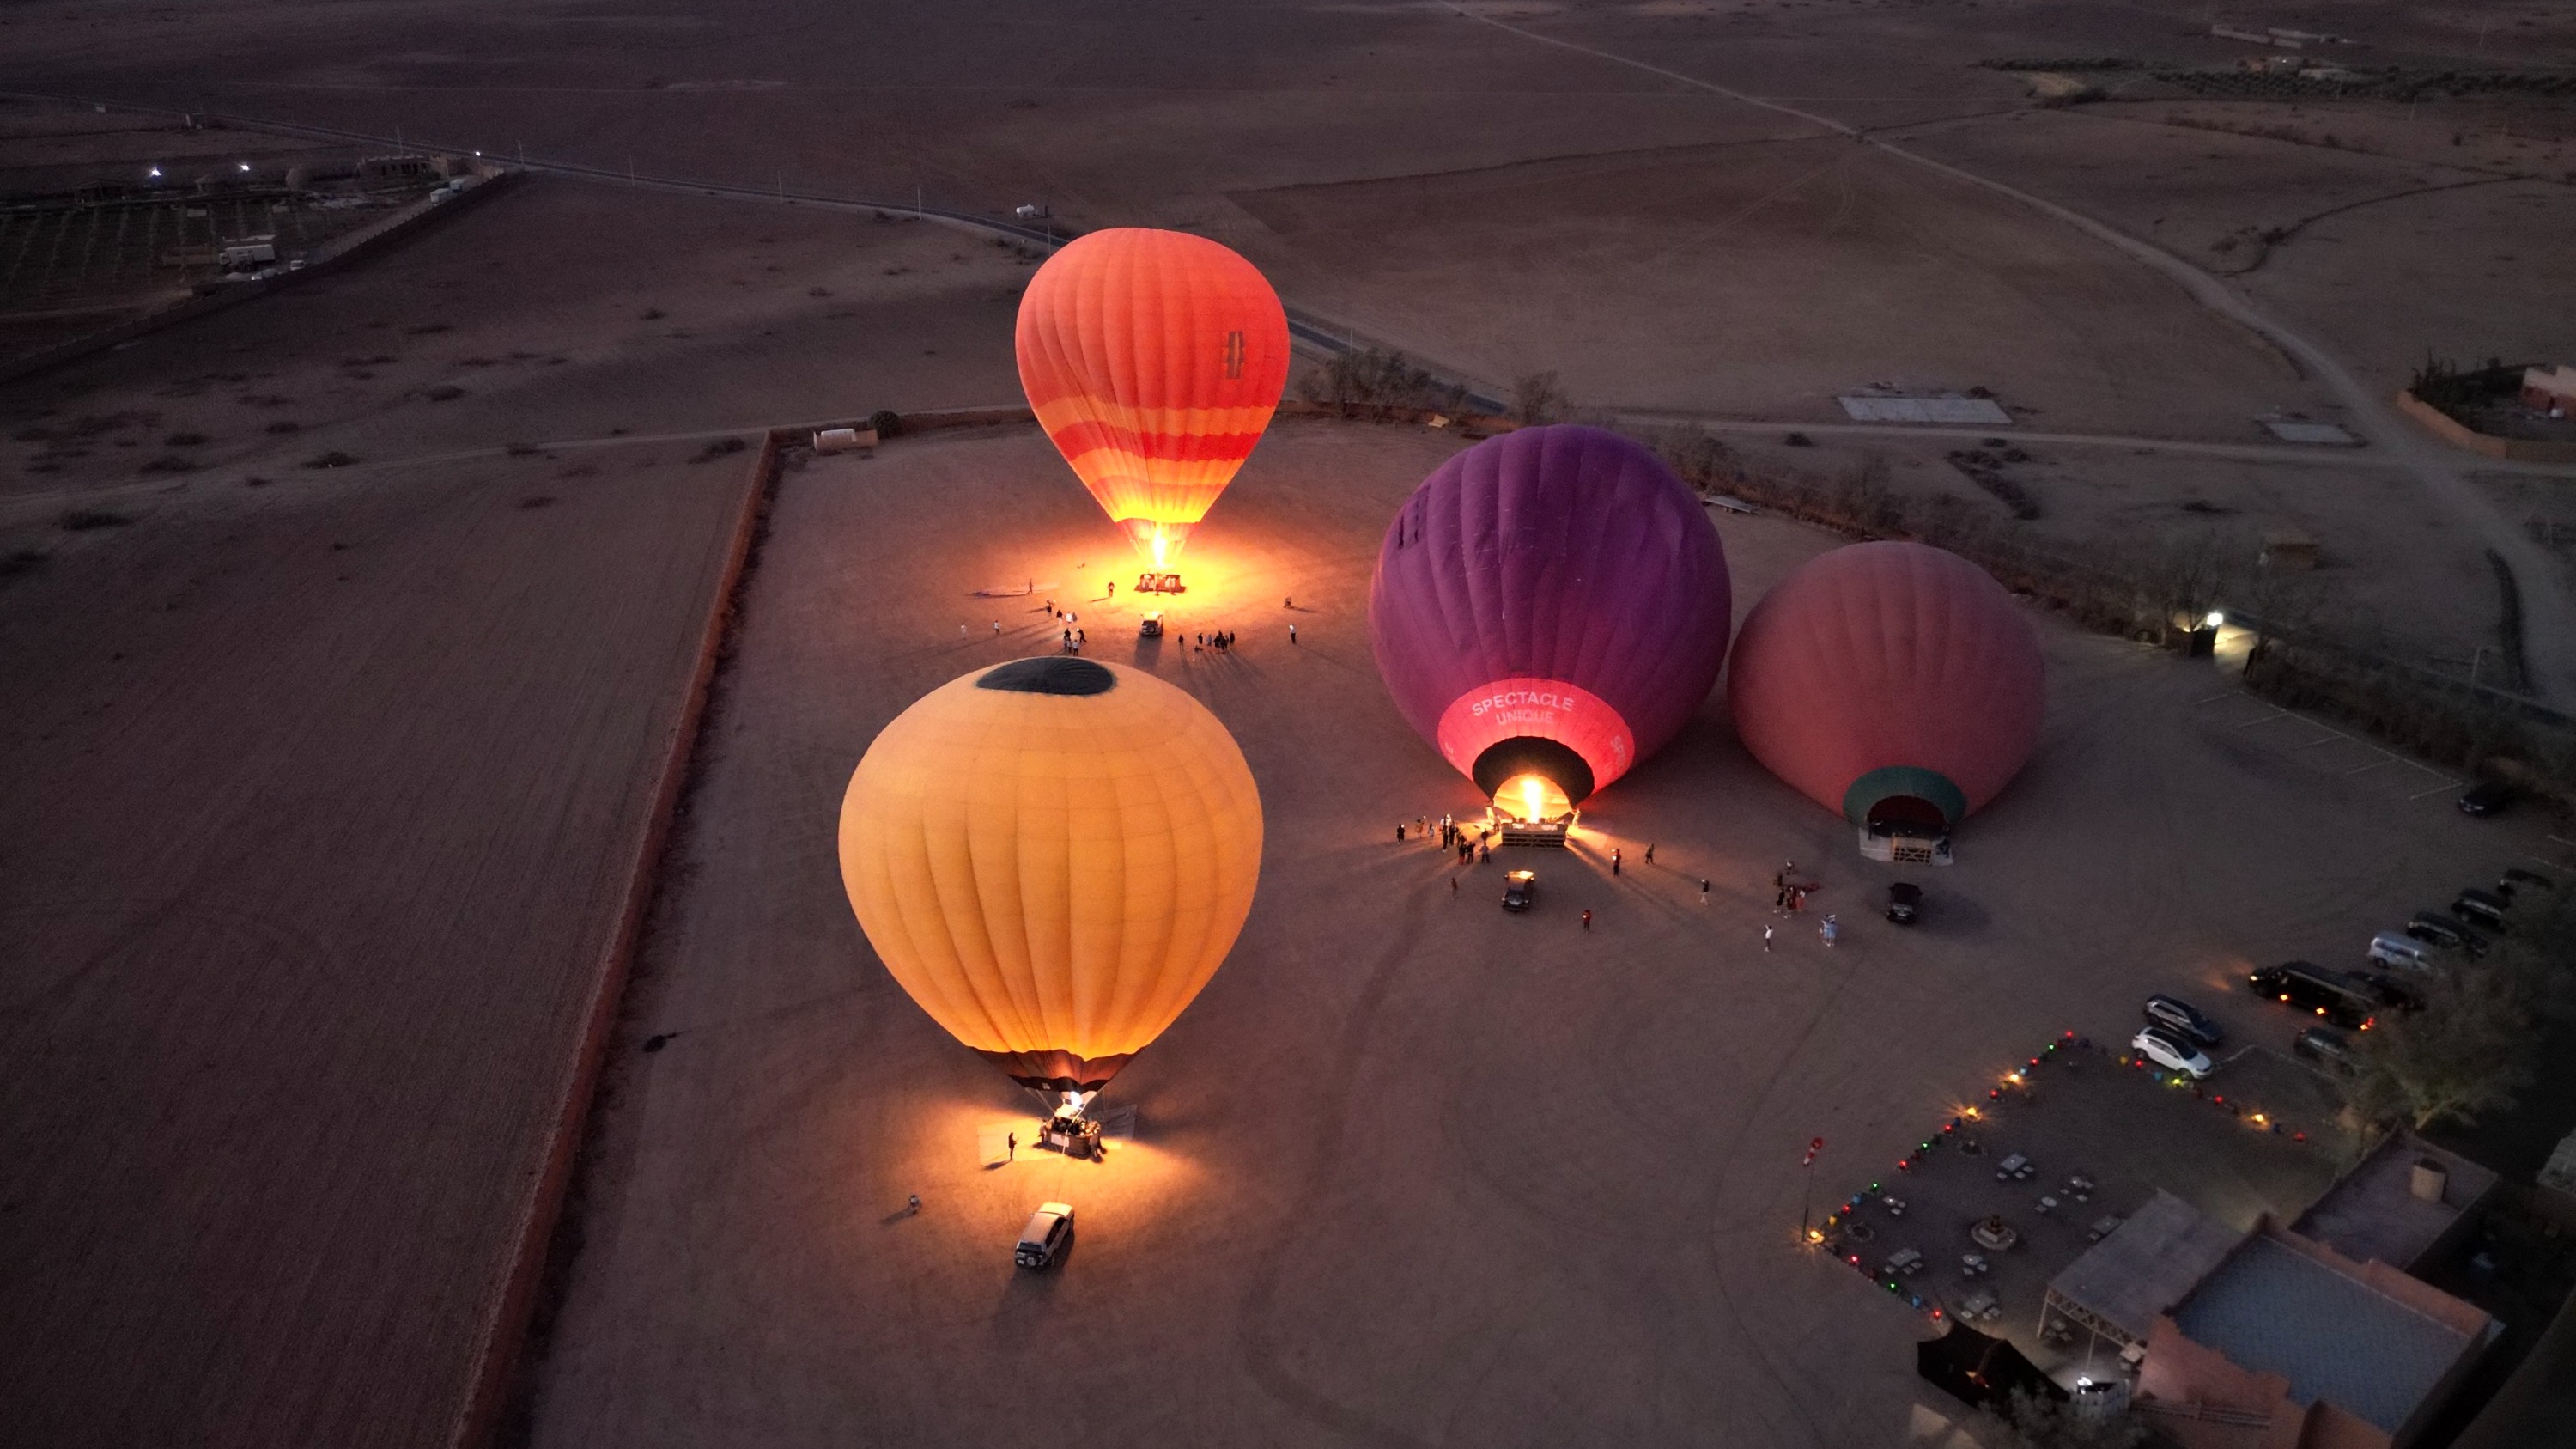 馬拉喀什熱氣球飛行體驗（含2小時越野沙灘車體驗）